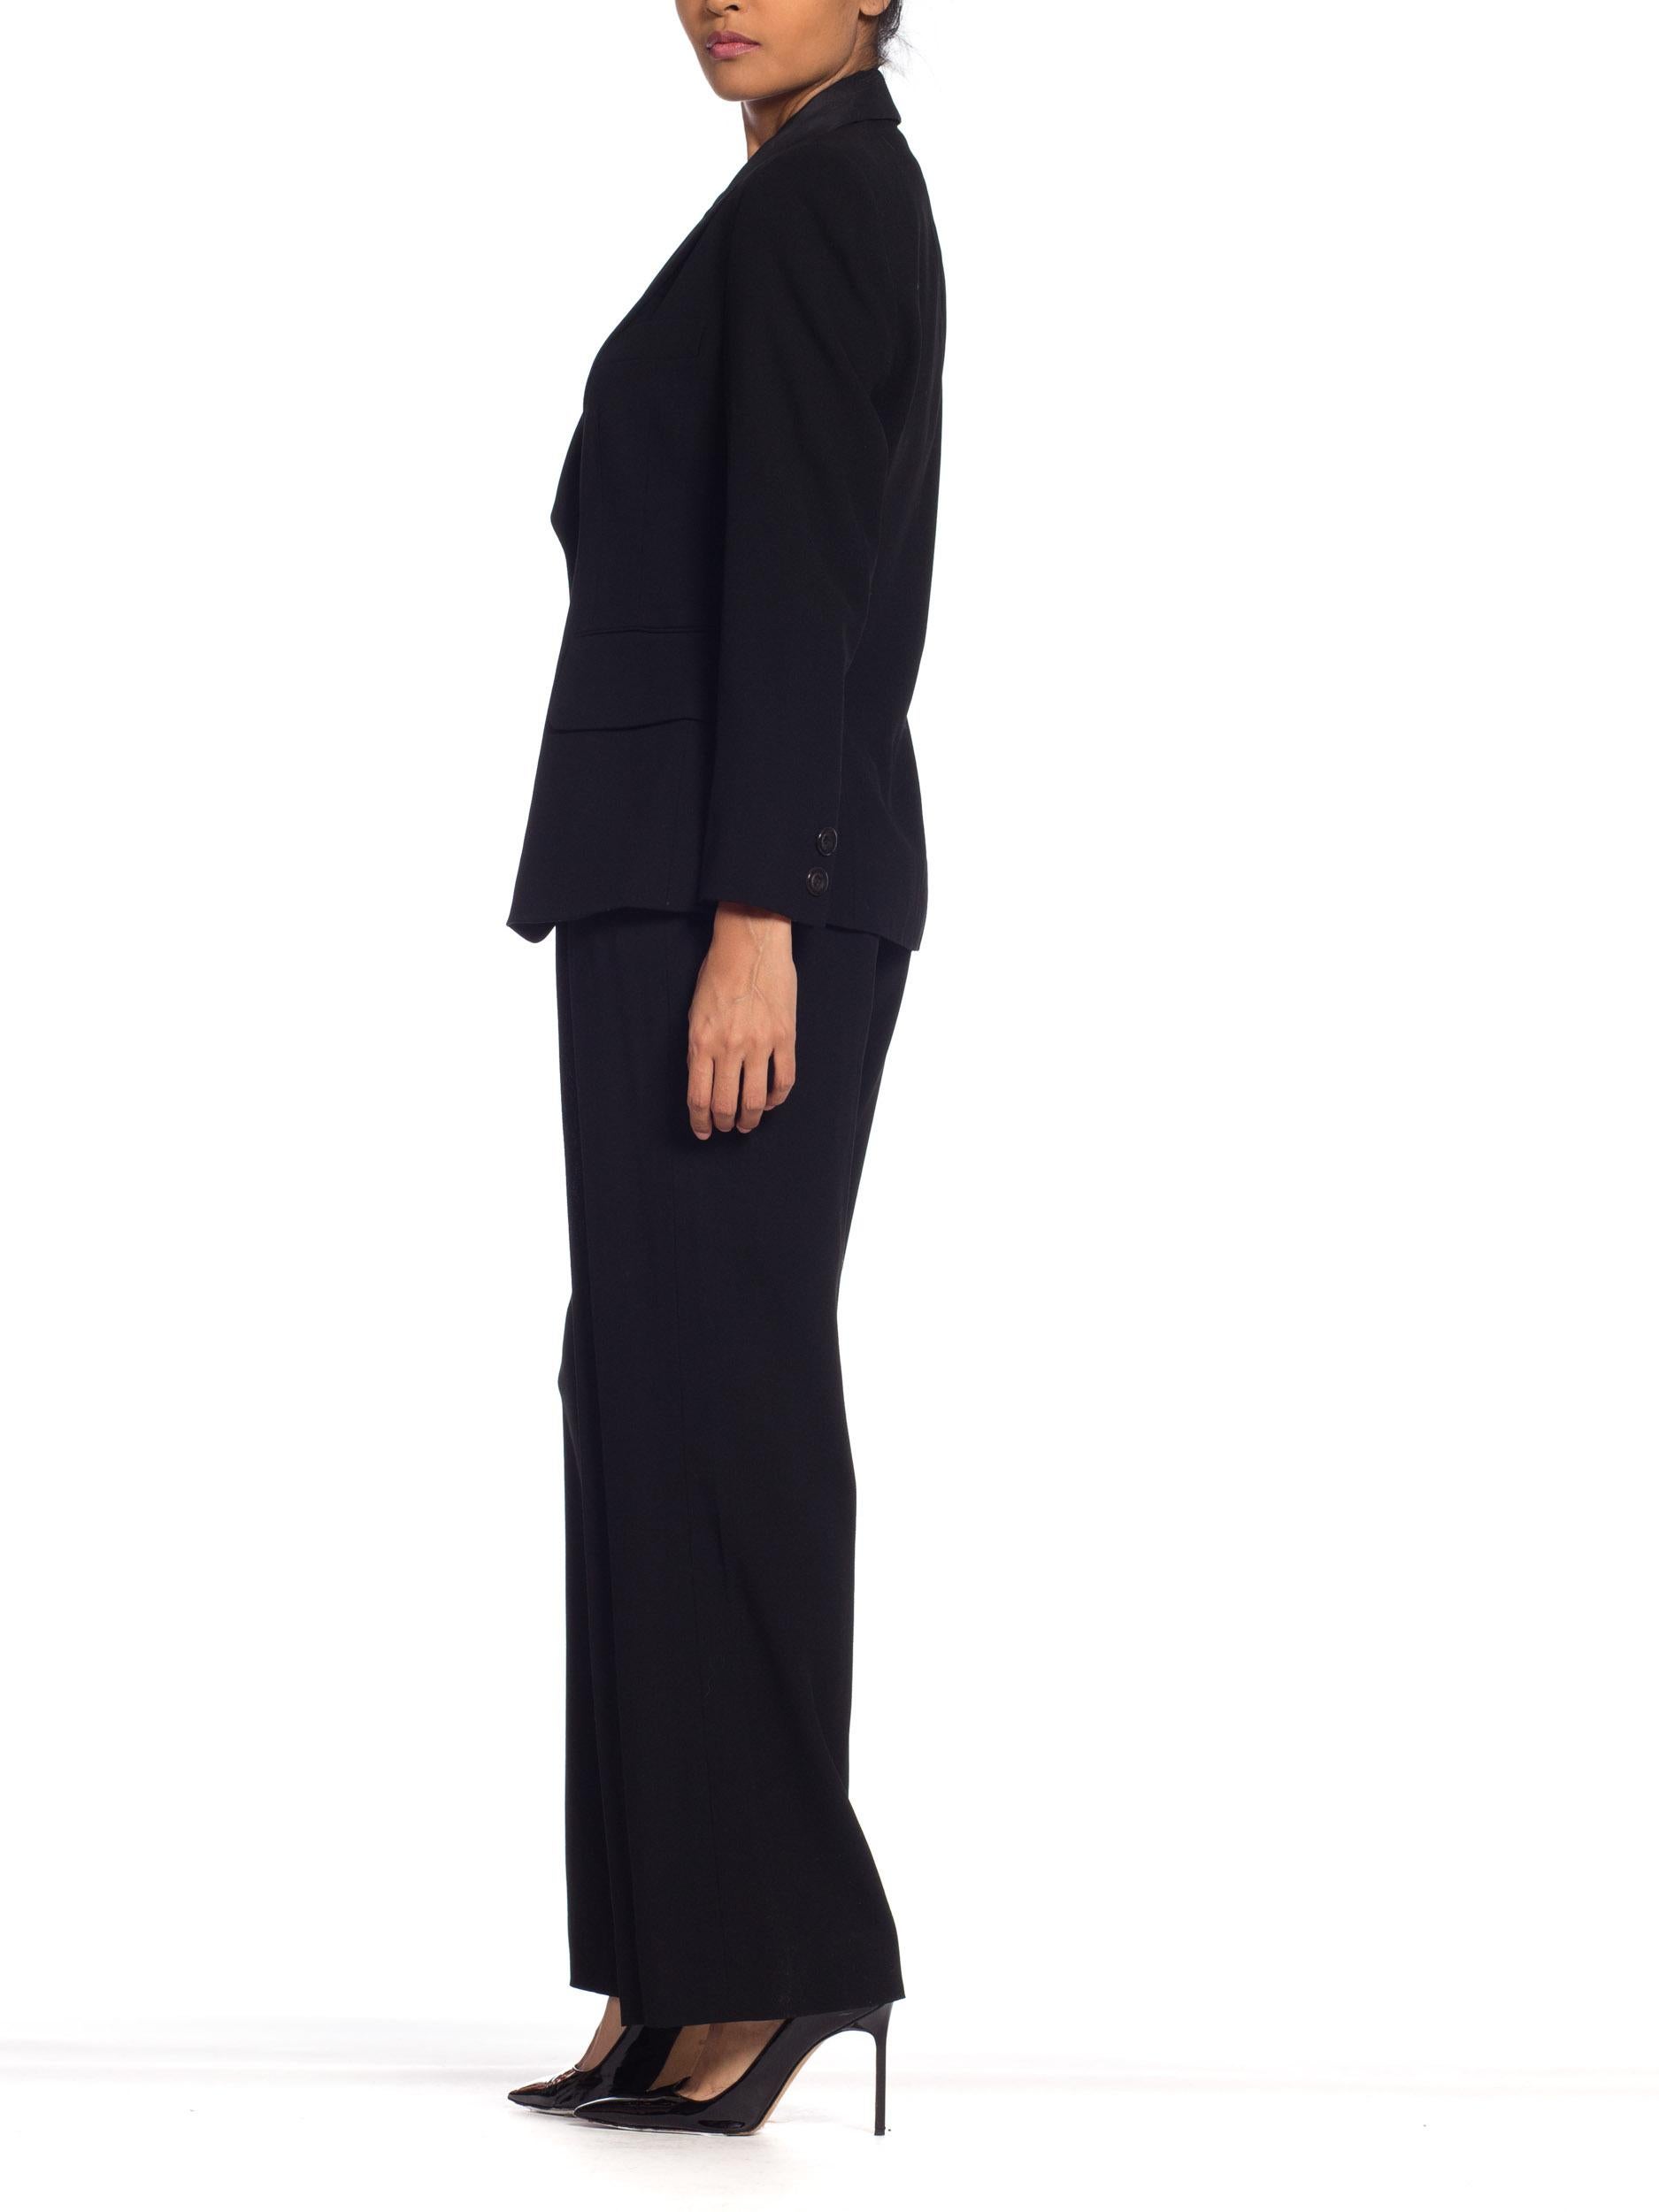 1990s Donna Karan YSL Style Tuxedo NWT 4